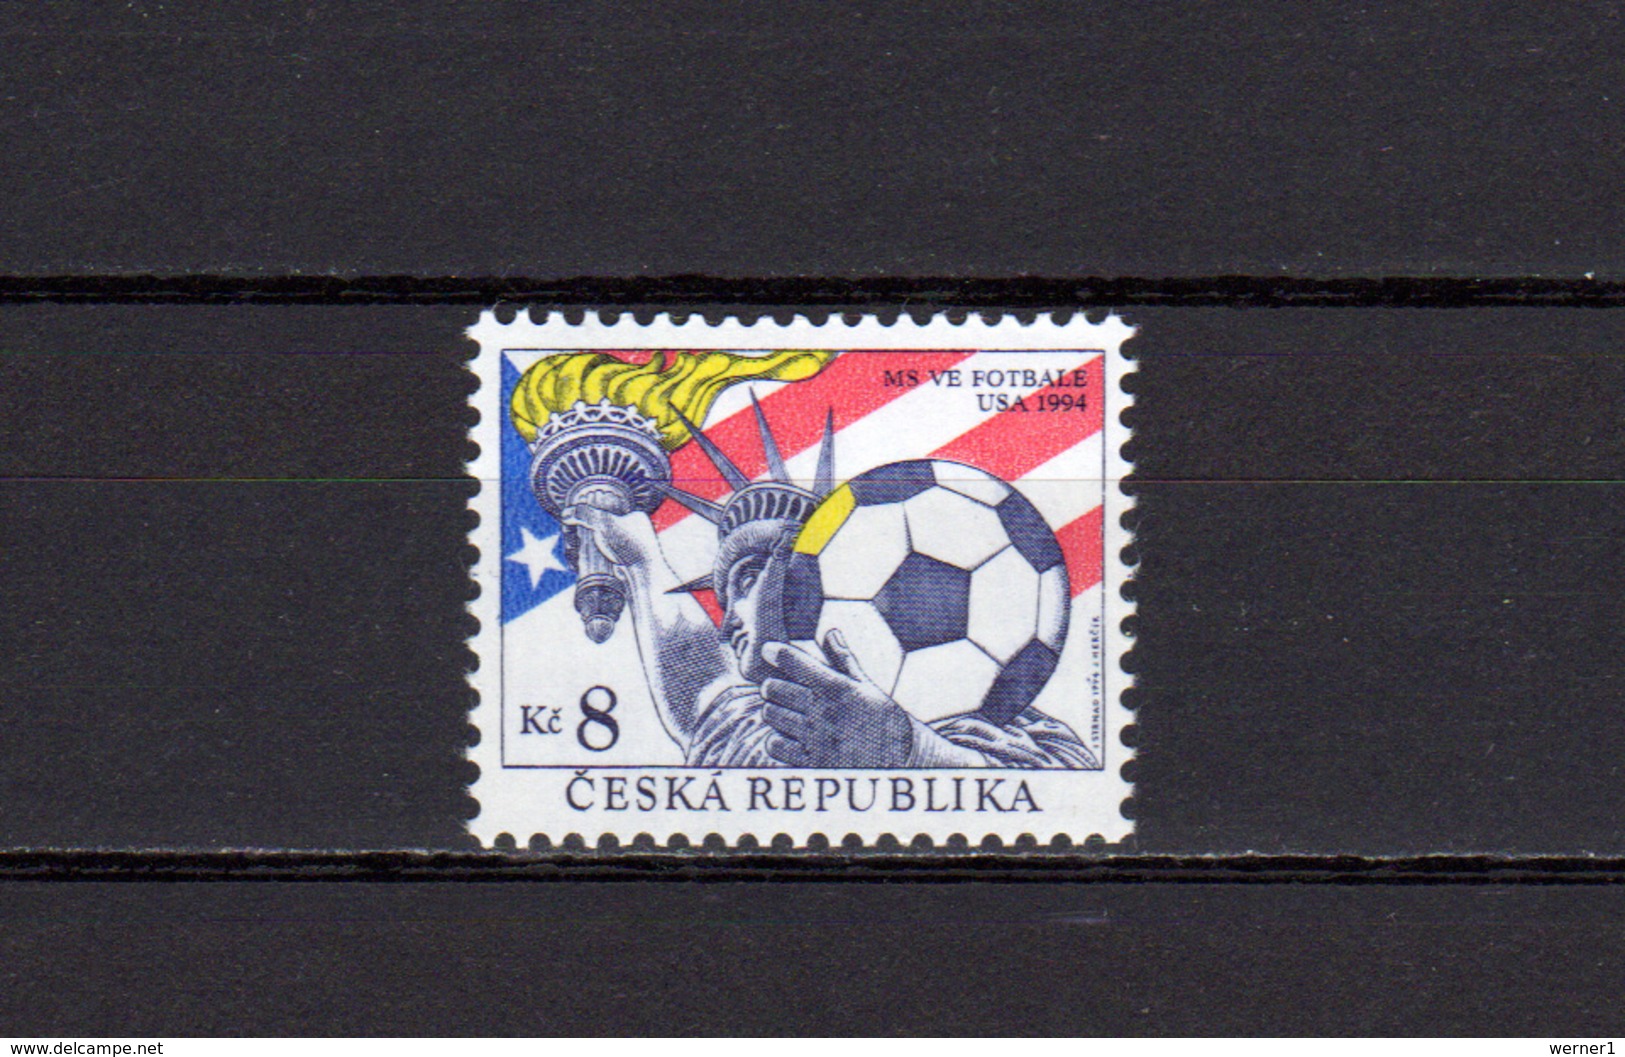 Czech Republic 1994 Football Soccer World Cup Stamp MNH - 1994 – États-Unis